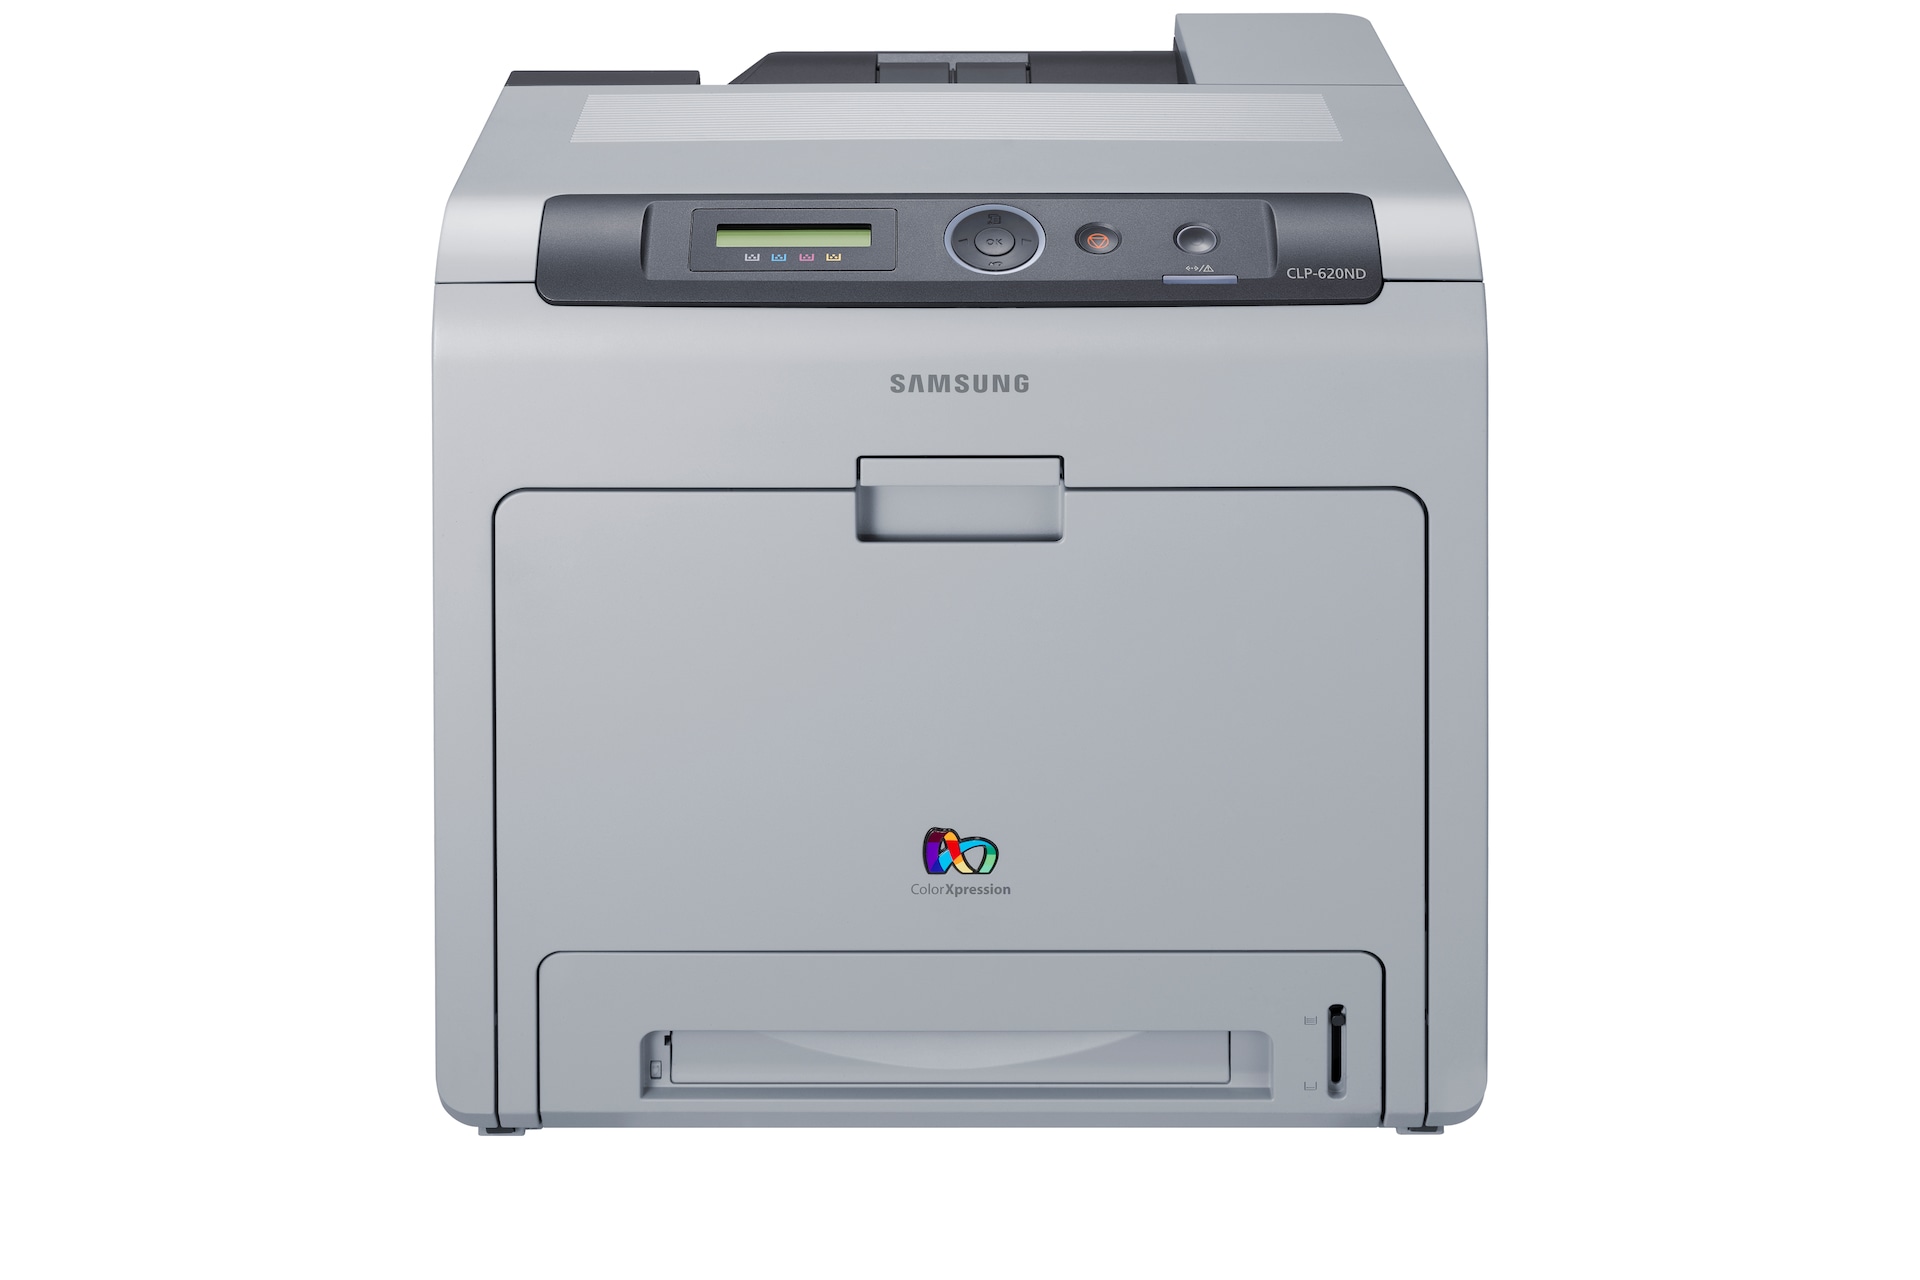 Samsung  670nd Color Laser Printer on Impresora Laser Color Clp 620nd   Informaci  N General   Samsung